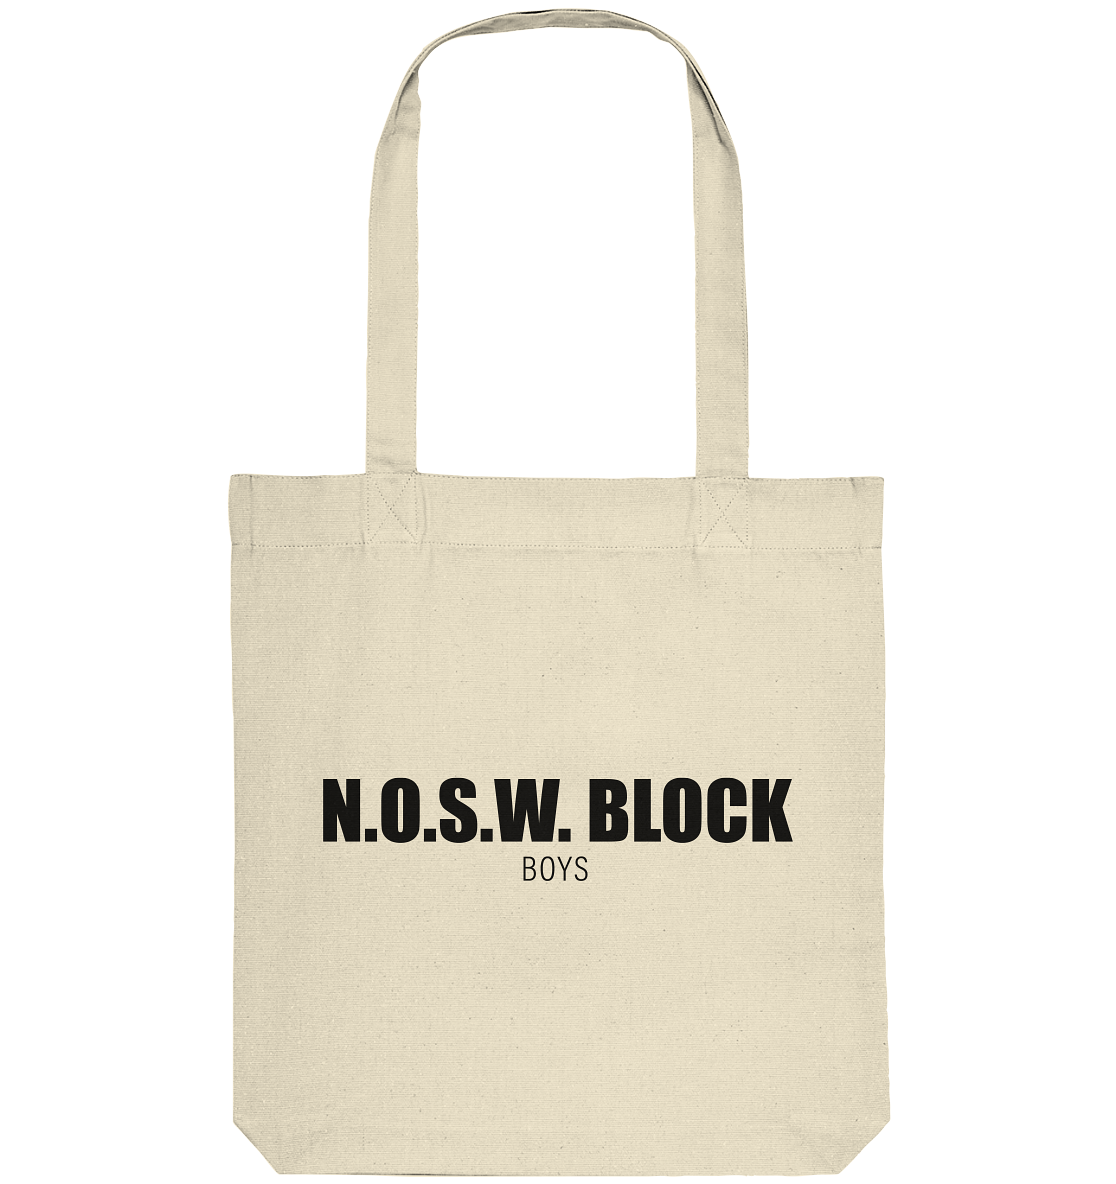 N.O.S.W. BLOCK Tote-Bag "N.O.S.W. BLOCK BOYS" Organic Baumwolltasche natural